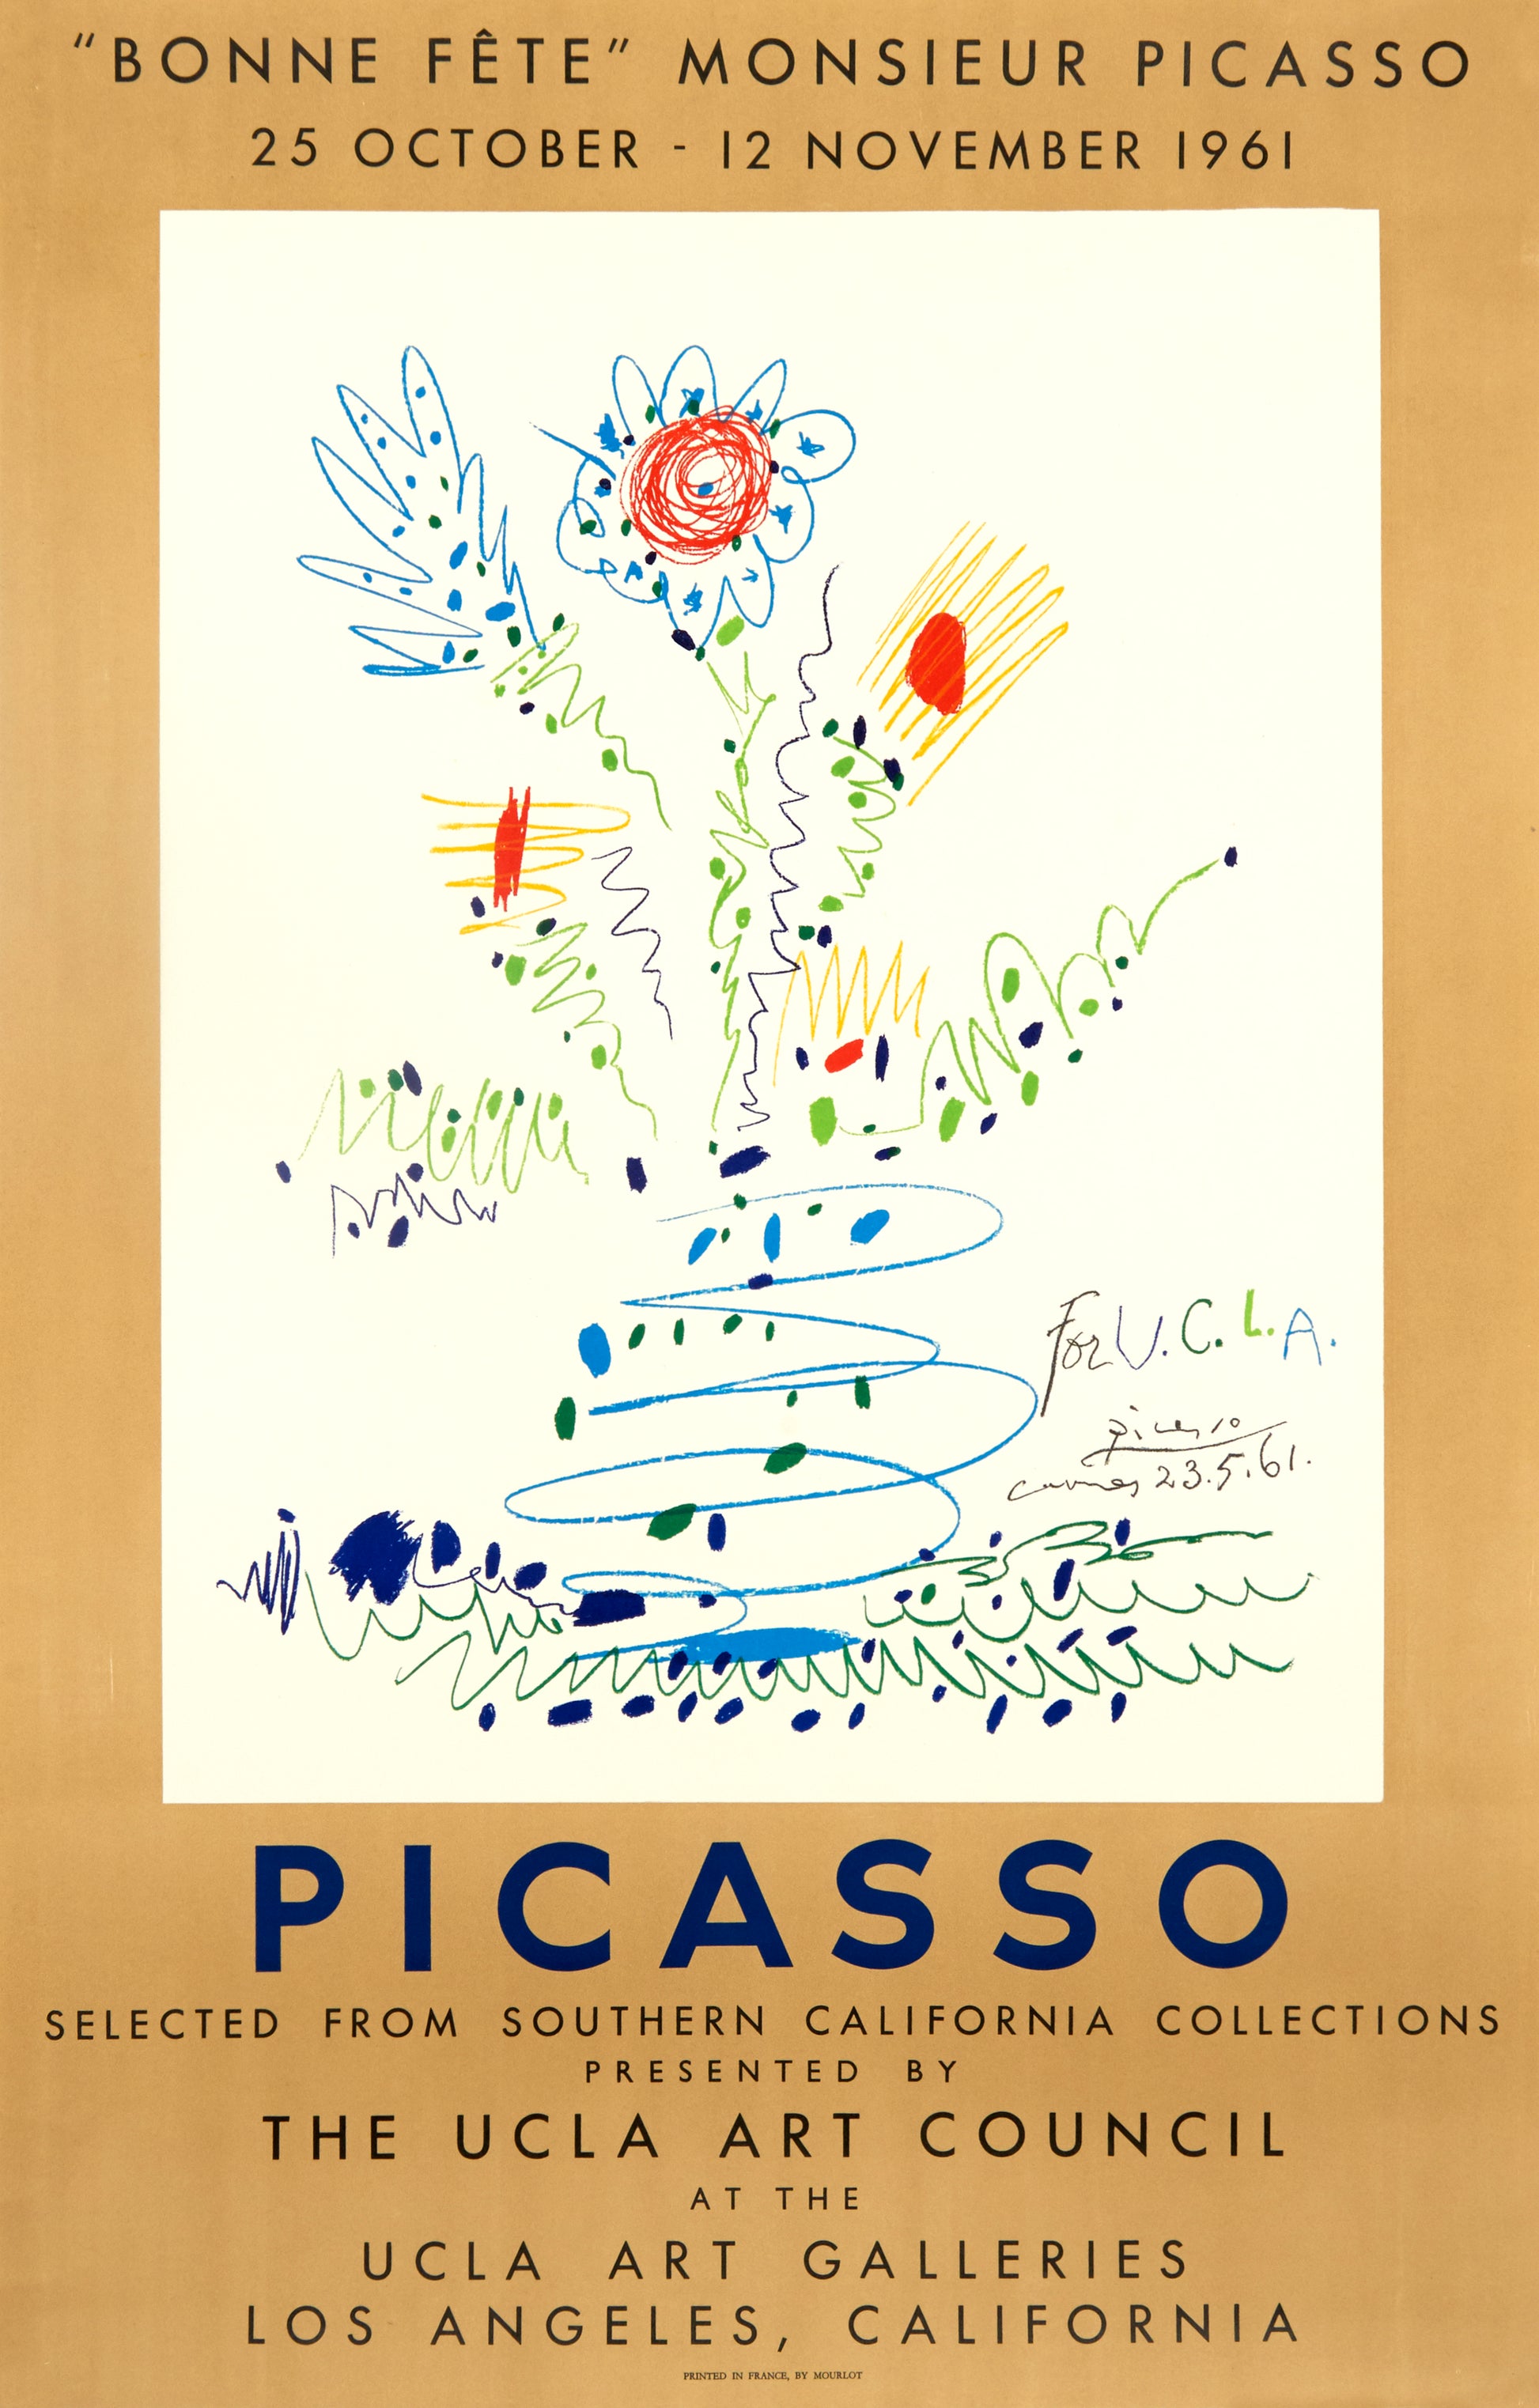 "Bonne Fête Monsieur Picasso" - The UCLA Art Galleries by Pablo Picasso, 1961 - Mourlot Editions - Fine_Art - Poster - Lithograph - Wall Art - Vintage - Prints - Original